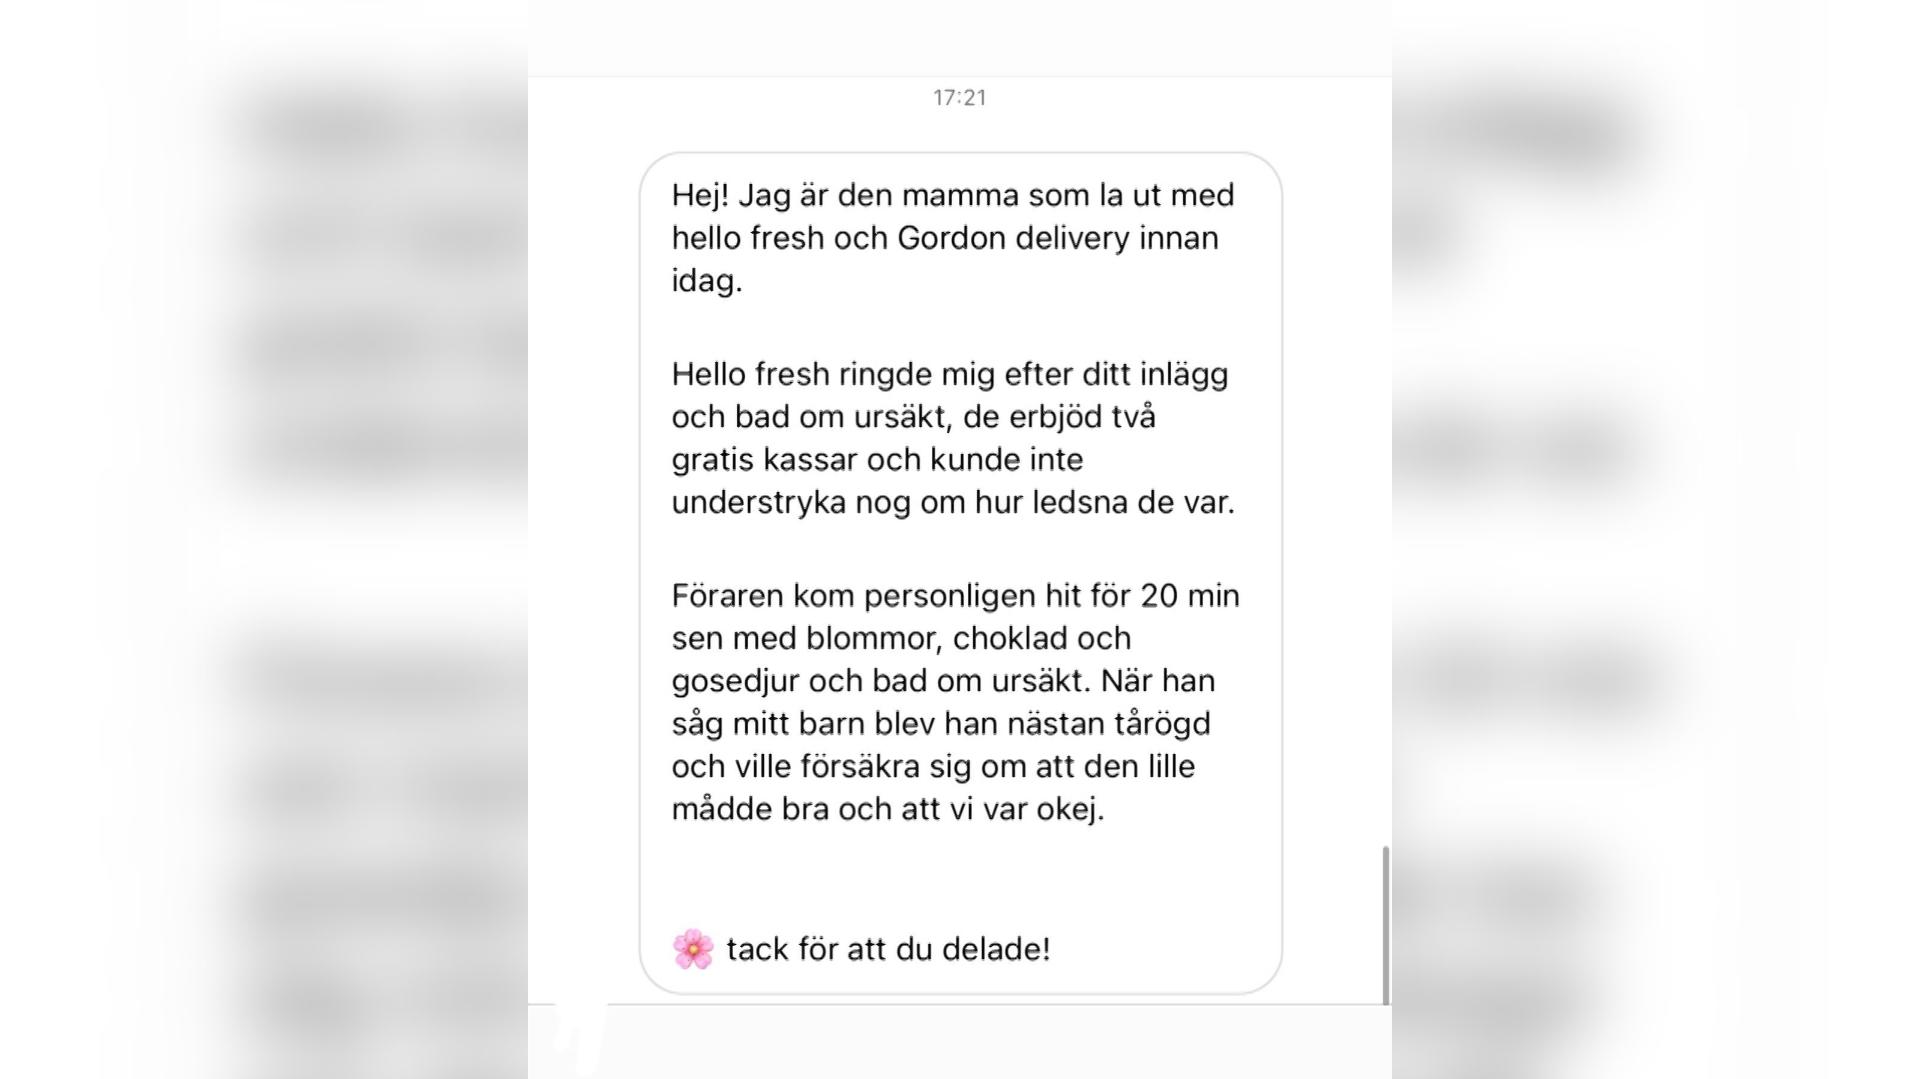 Die Nachricht der Mutter, in der sie sich auf schwedisch beim Lieferdienst für die aufrichtige Entschuldigung bedankt. "Dem Fahrer kamen fast die Tränen. Danke fürs Teilen!", schreibt sie unter anderem.